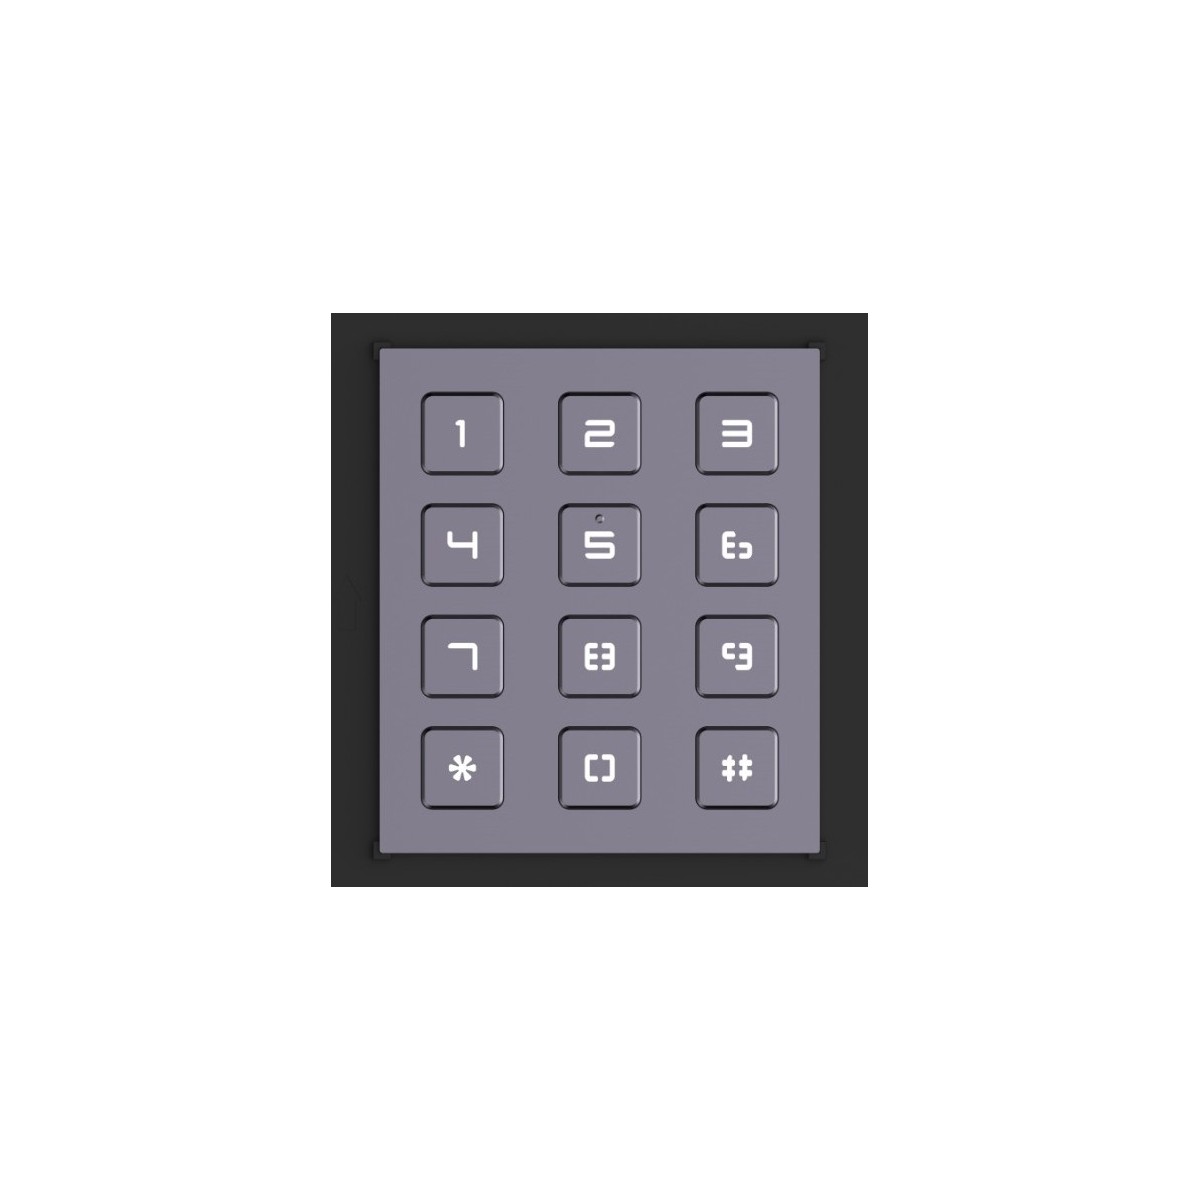 HIKVISION DS-KD-KP, numerická klávesnice pro modulární videotelefony